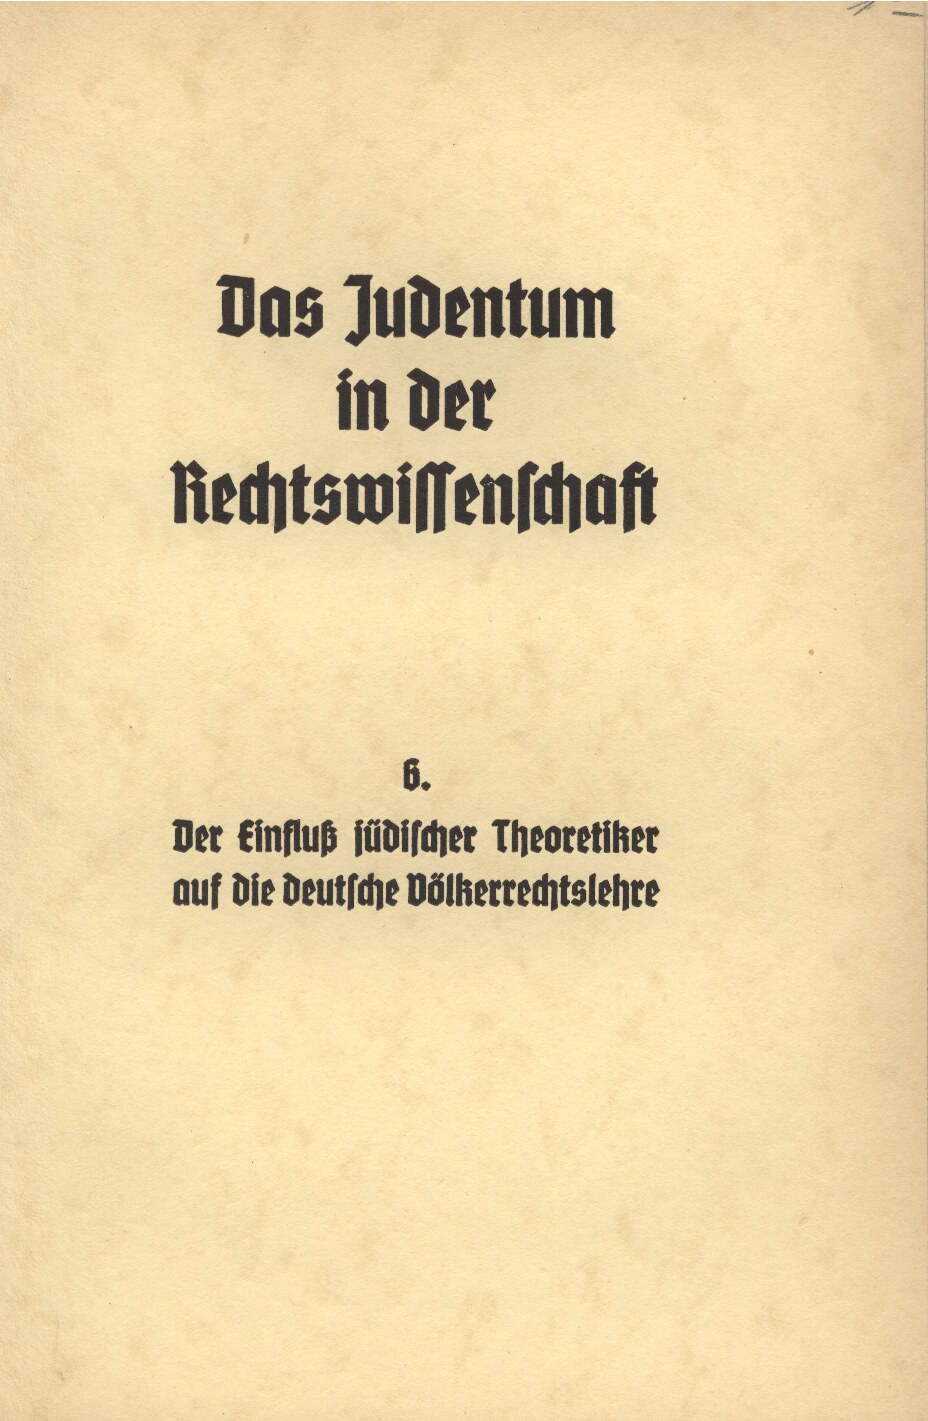 Das Judentum in der Rechtswissenschaft - 6. - Der Einfluss jüdischer Theoretiker auf die deutsche Voelkerrechtslehre (1938, 40 S., Scan, Fraktur)